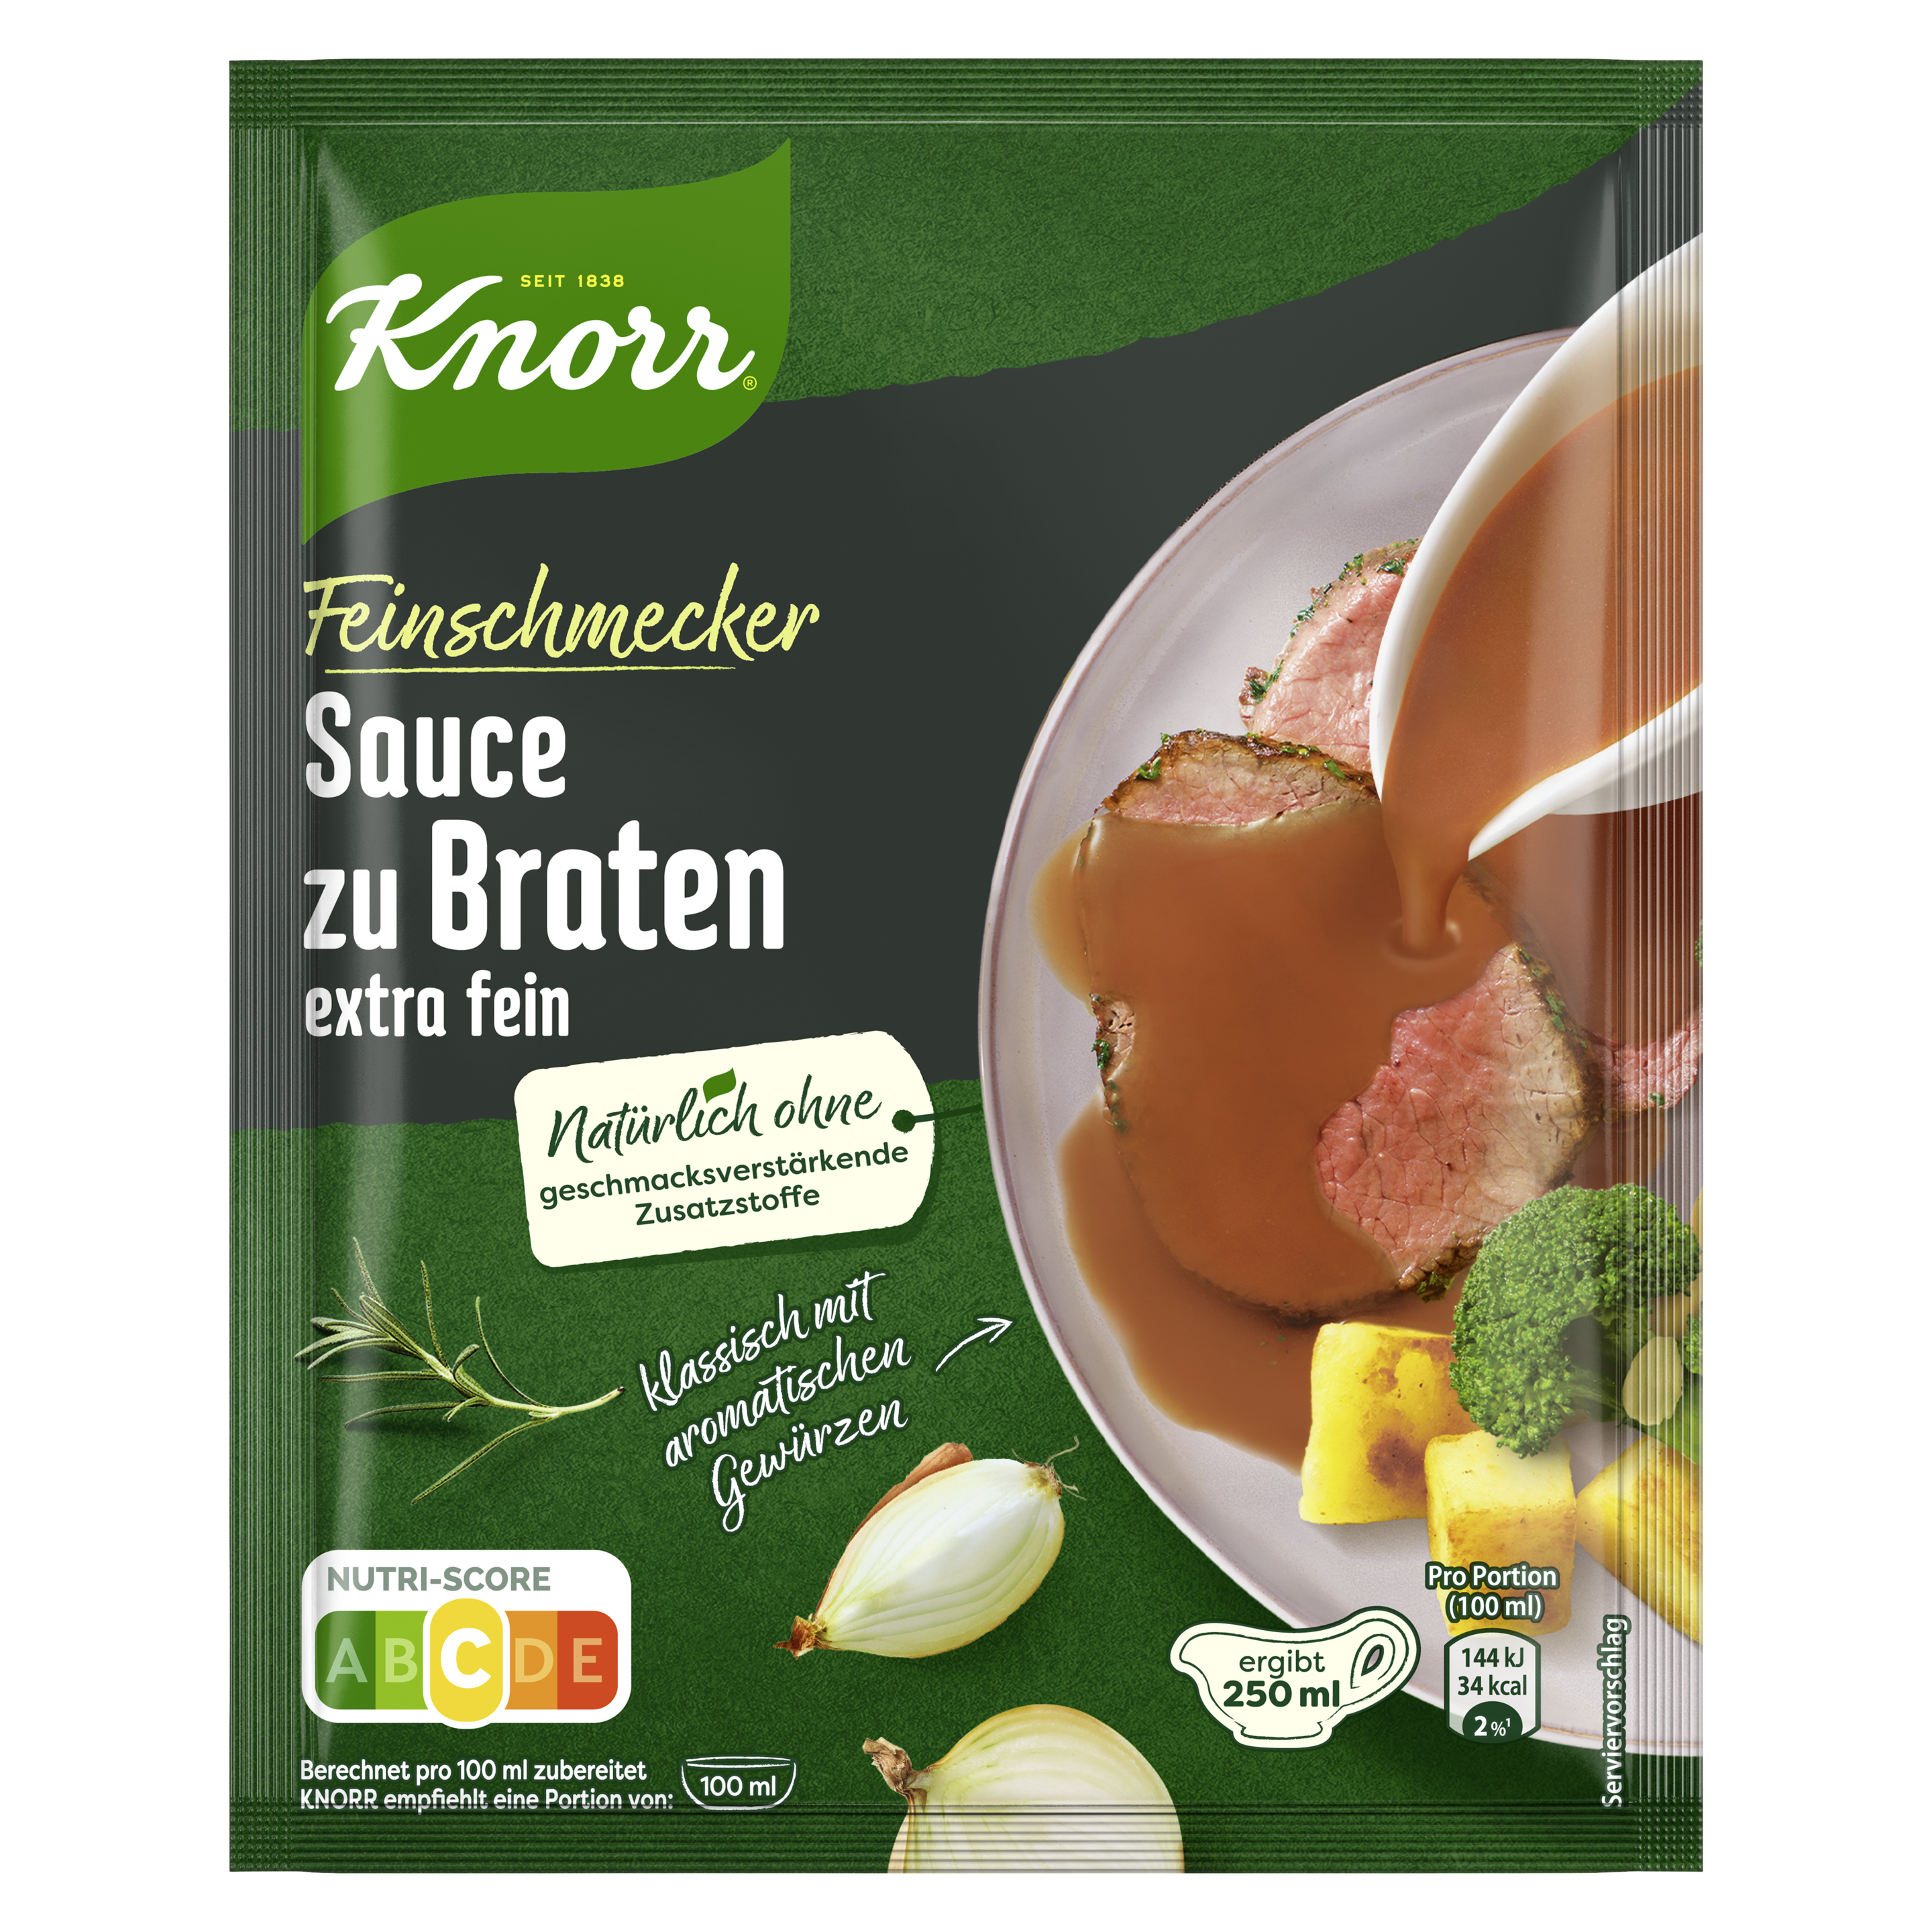 Knorr Feinschmecker Sauce zu Braten extra fein ergibt 250 ml